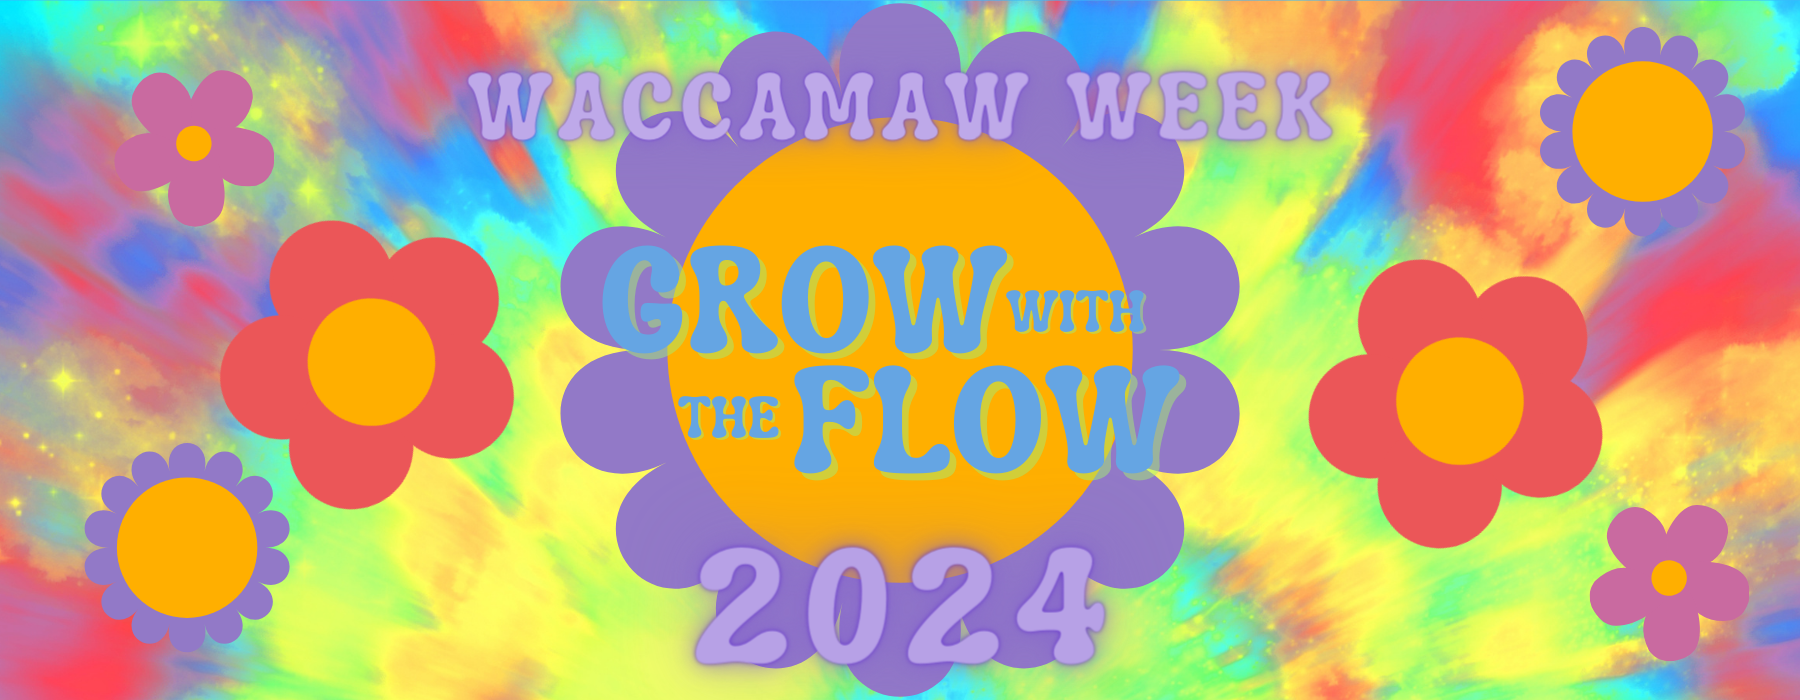 Waccamaw Week 2024